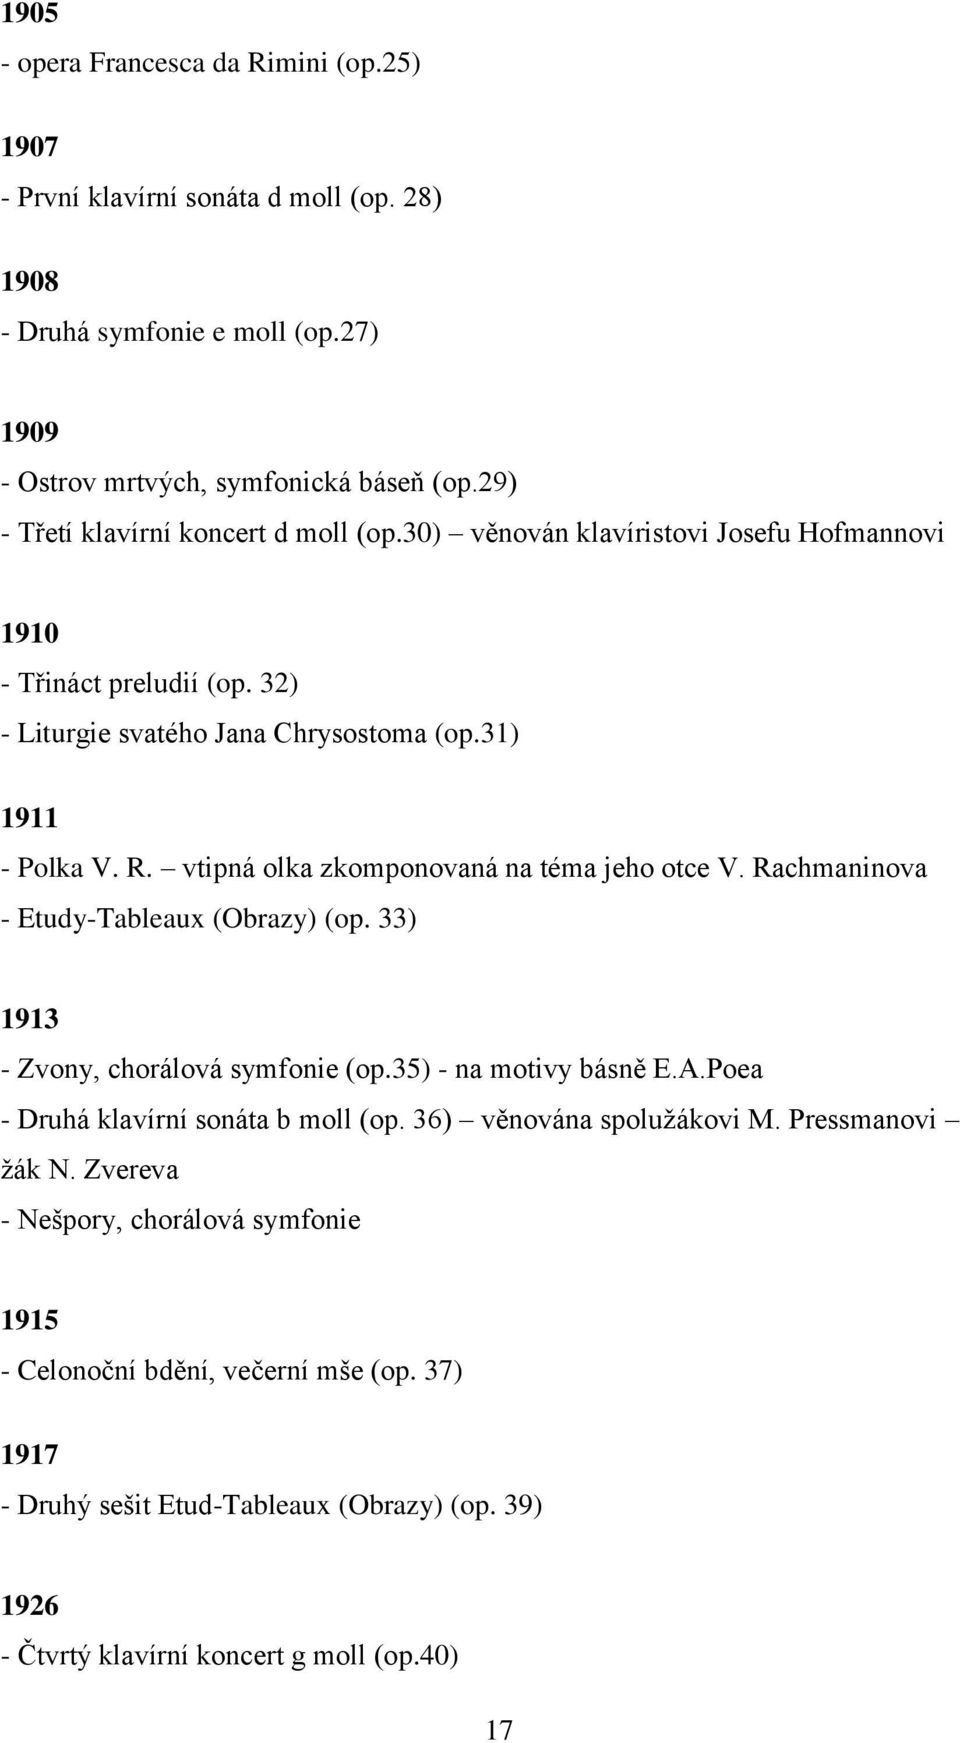 vtipná olka zkomponovaná na téma jeho otce V. Rachmaninova - Etudy-Tableaux (Obrazy) (op. 33) 1913 - Zvony, chorálová symfonie (op.35) - na motivy básně E.A.